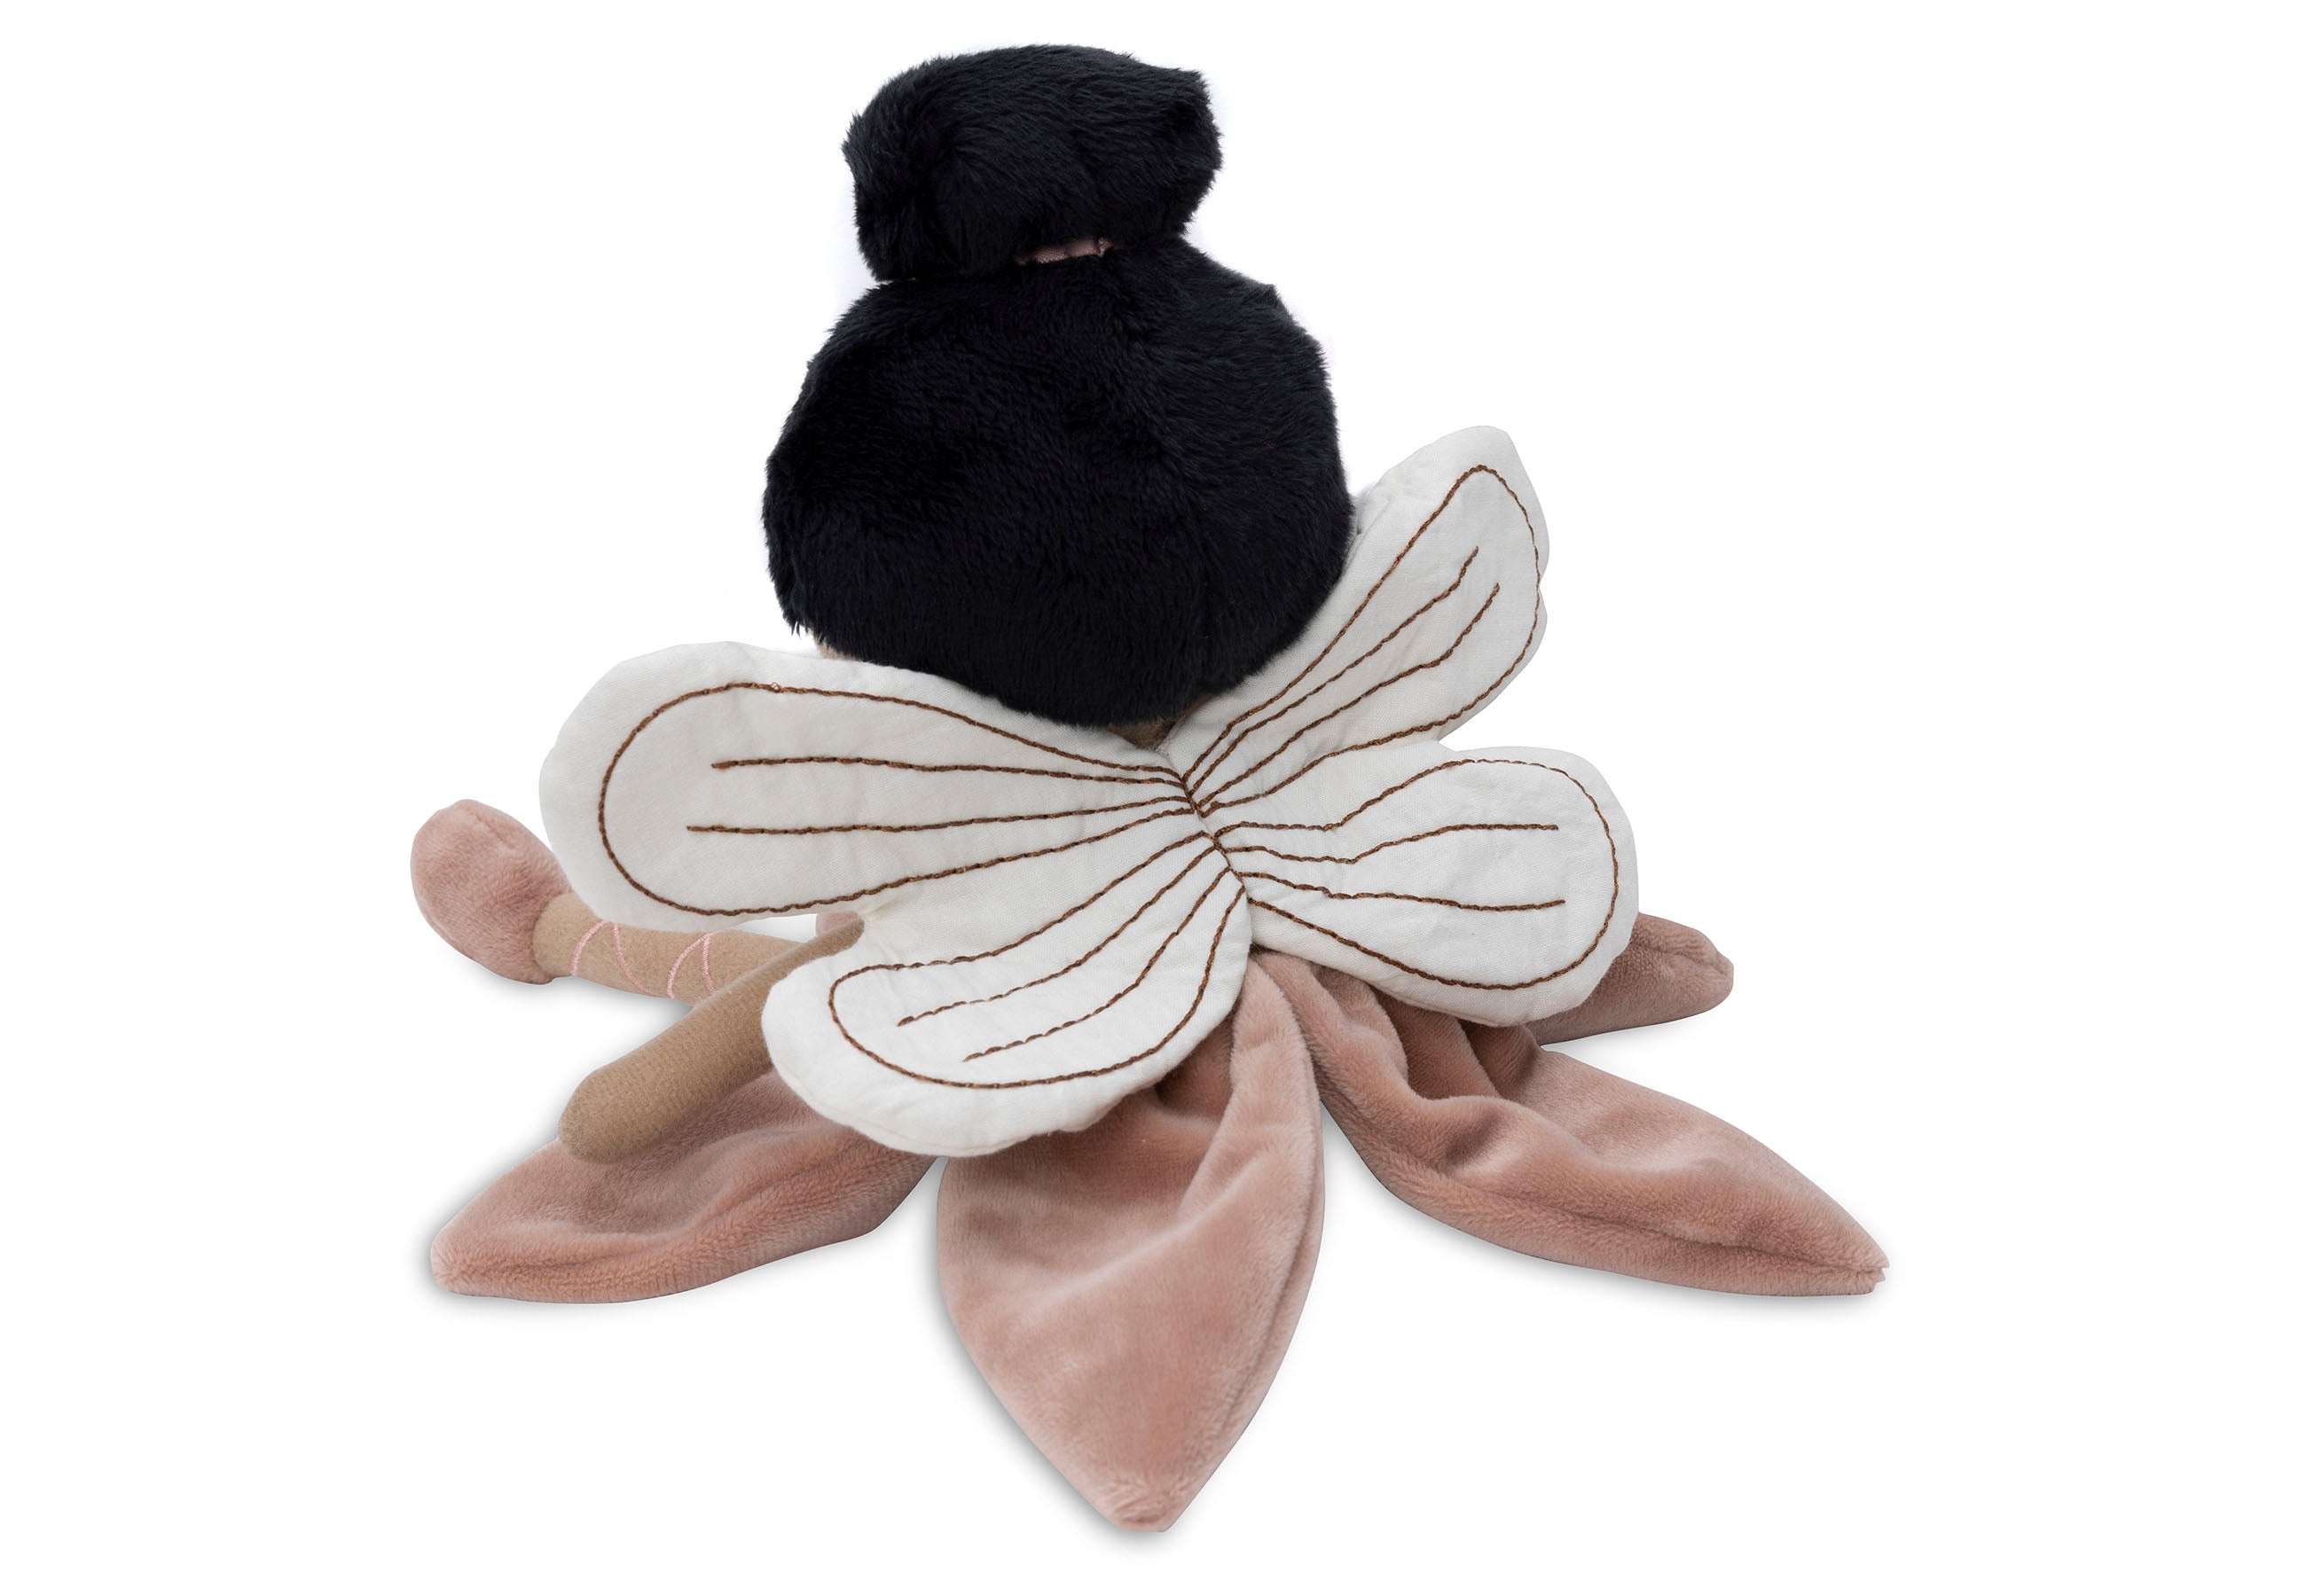 Jollein Jollein Stuffed Animal Fairy Mae - Pearls & Swines